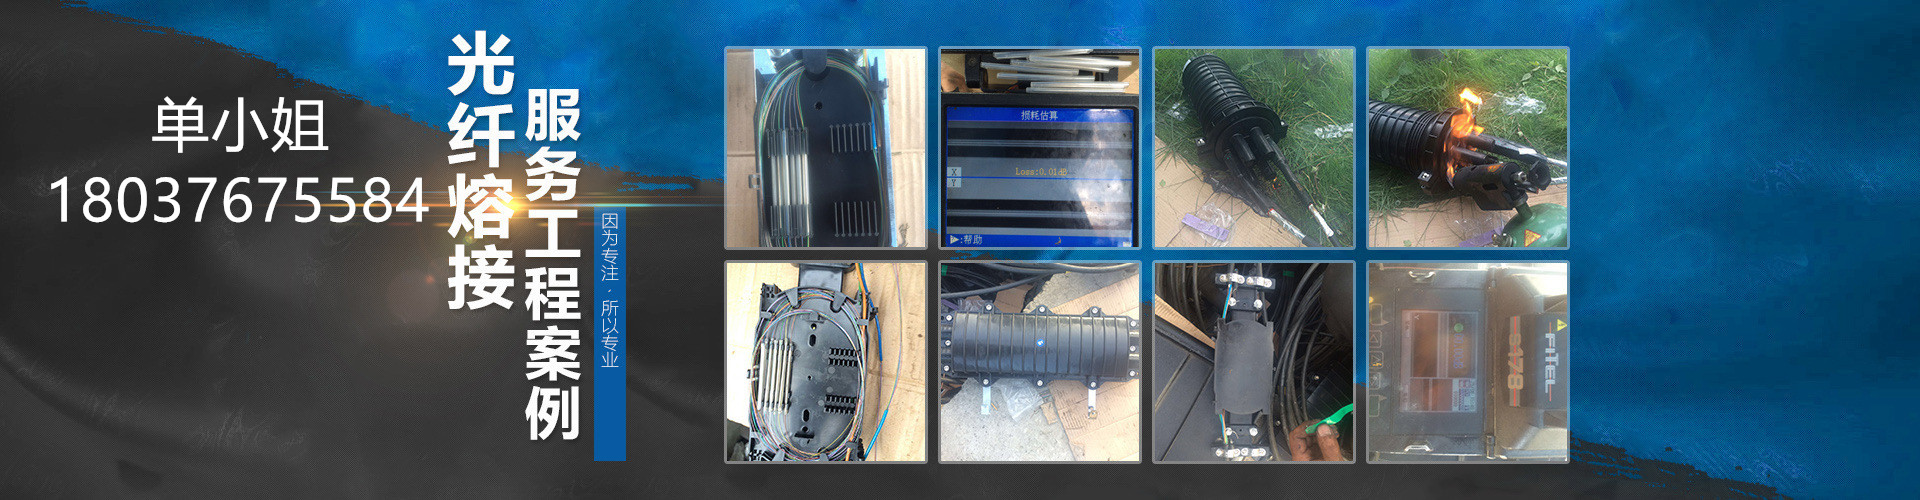 杭州光缆熔接服务 采用精密的熔接机施工，光纤熔接速度快、效率高、衰减小、质量稳定